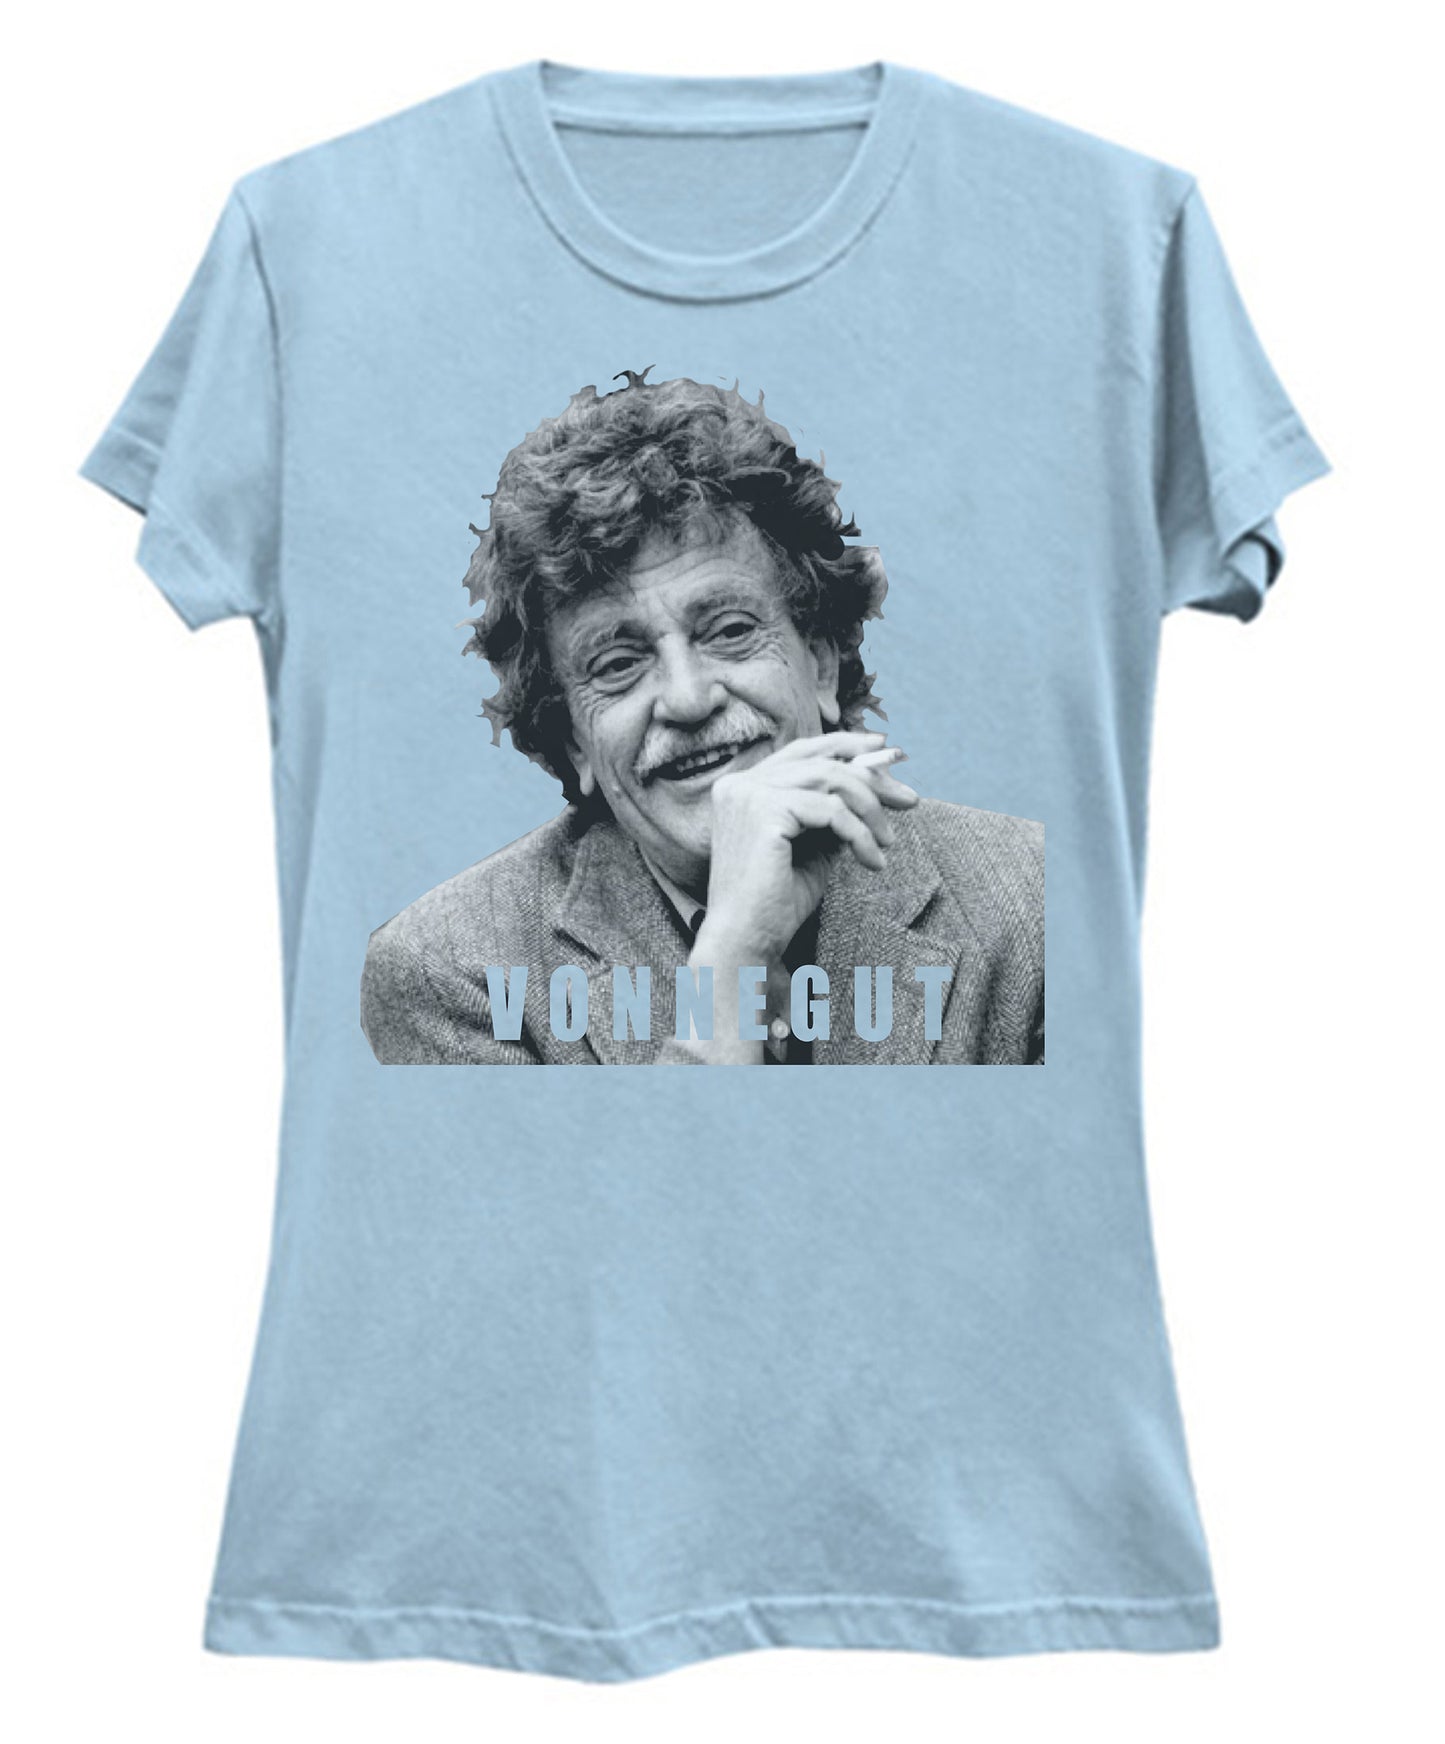 Kurt Vonnegut T-Shirt